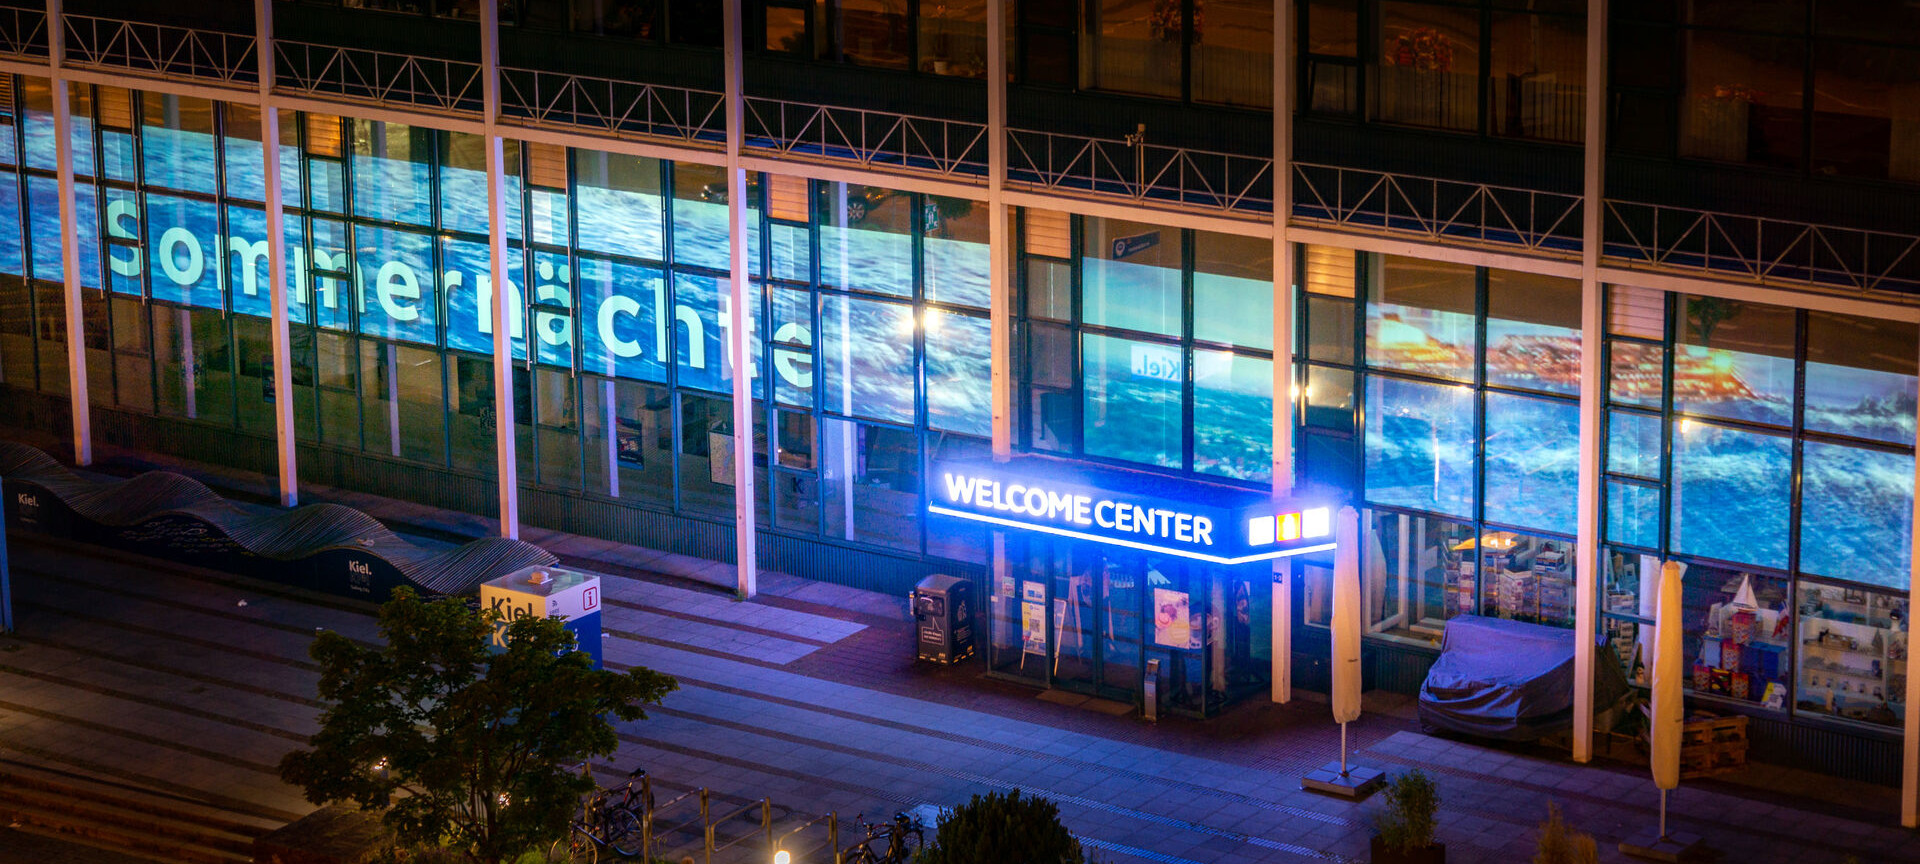 Welcome Center Fassade bei Nacht beleuchtet